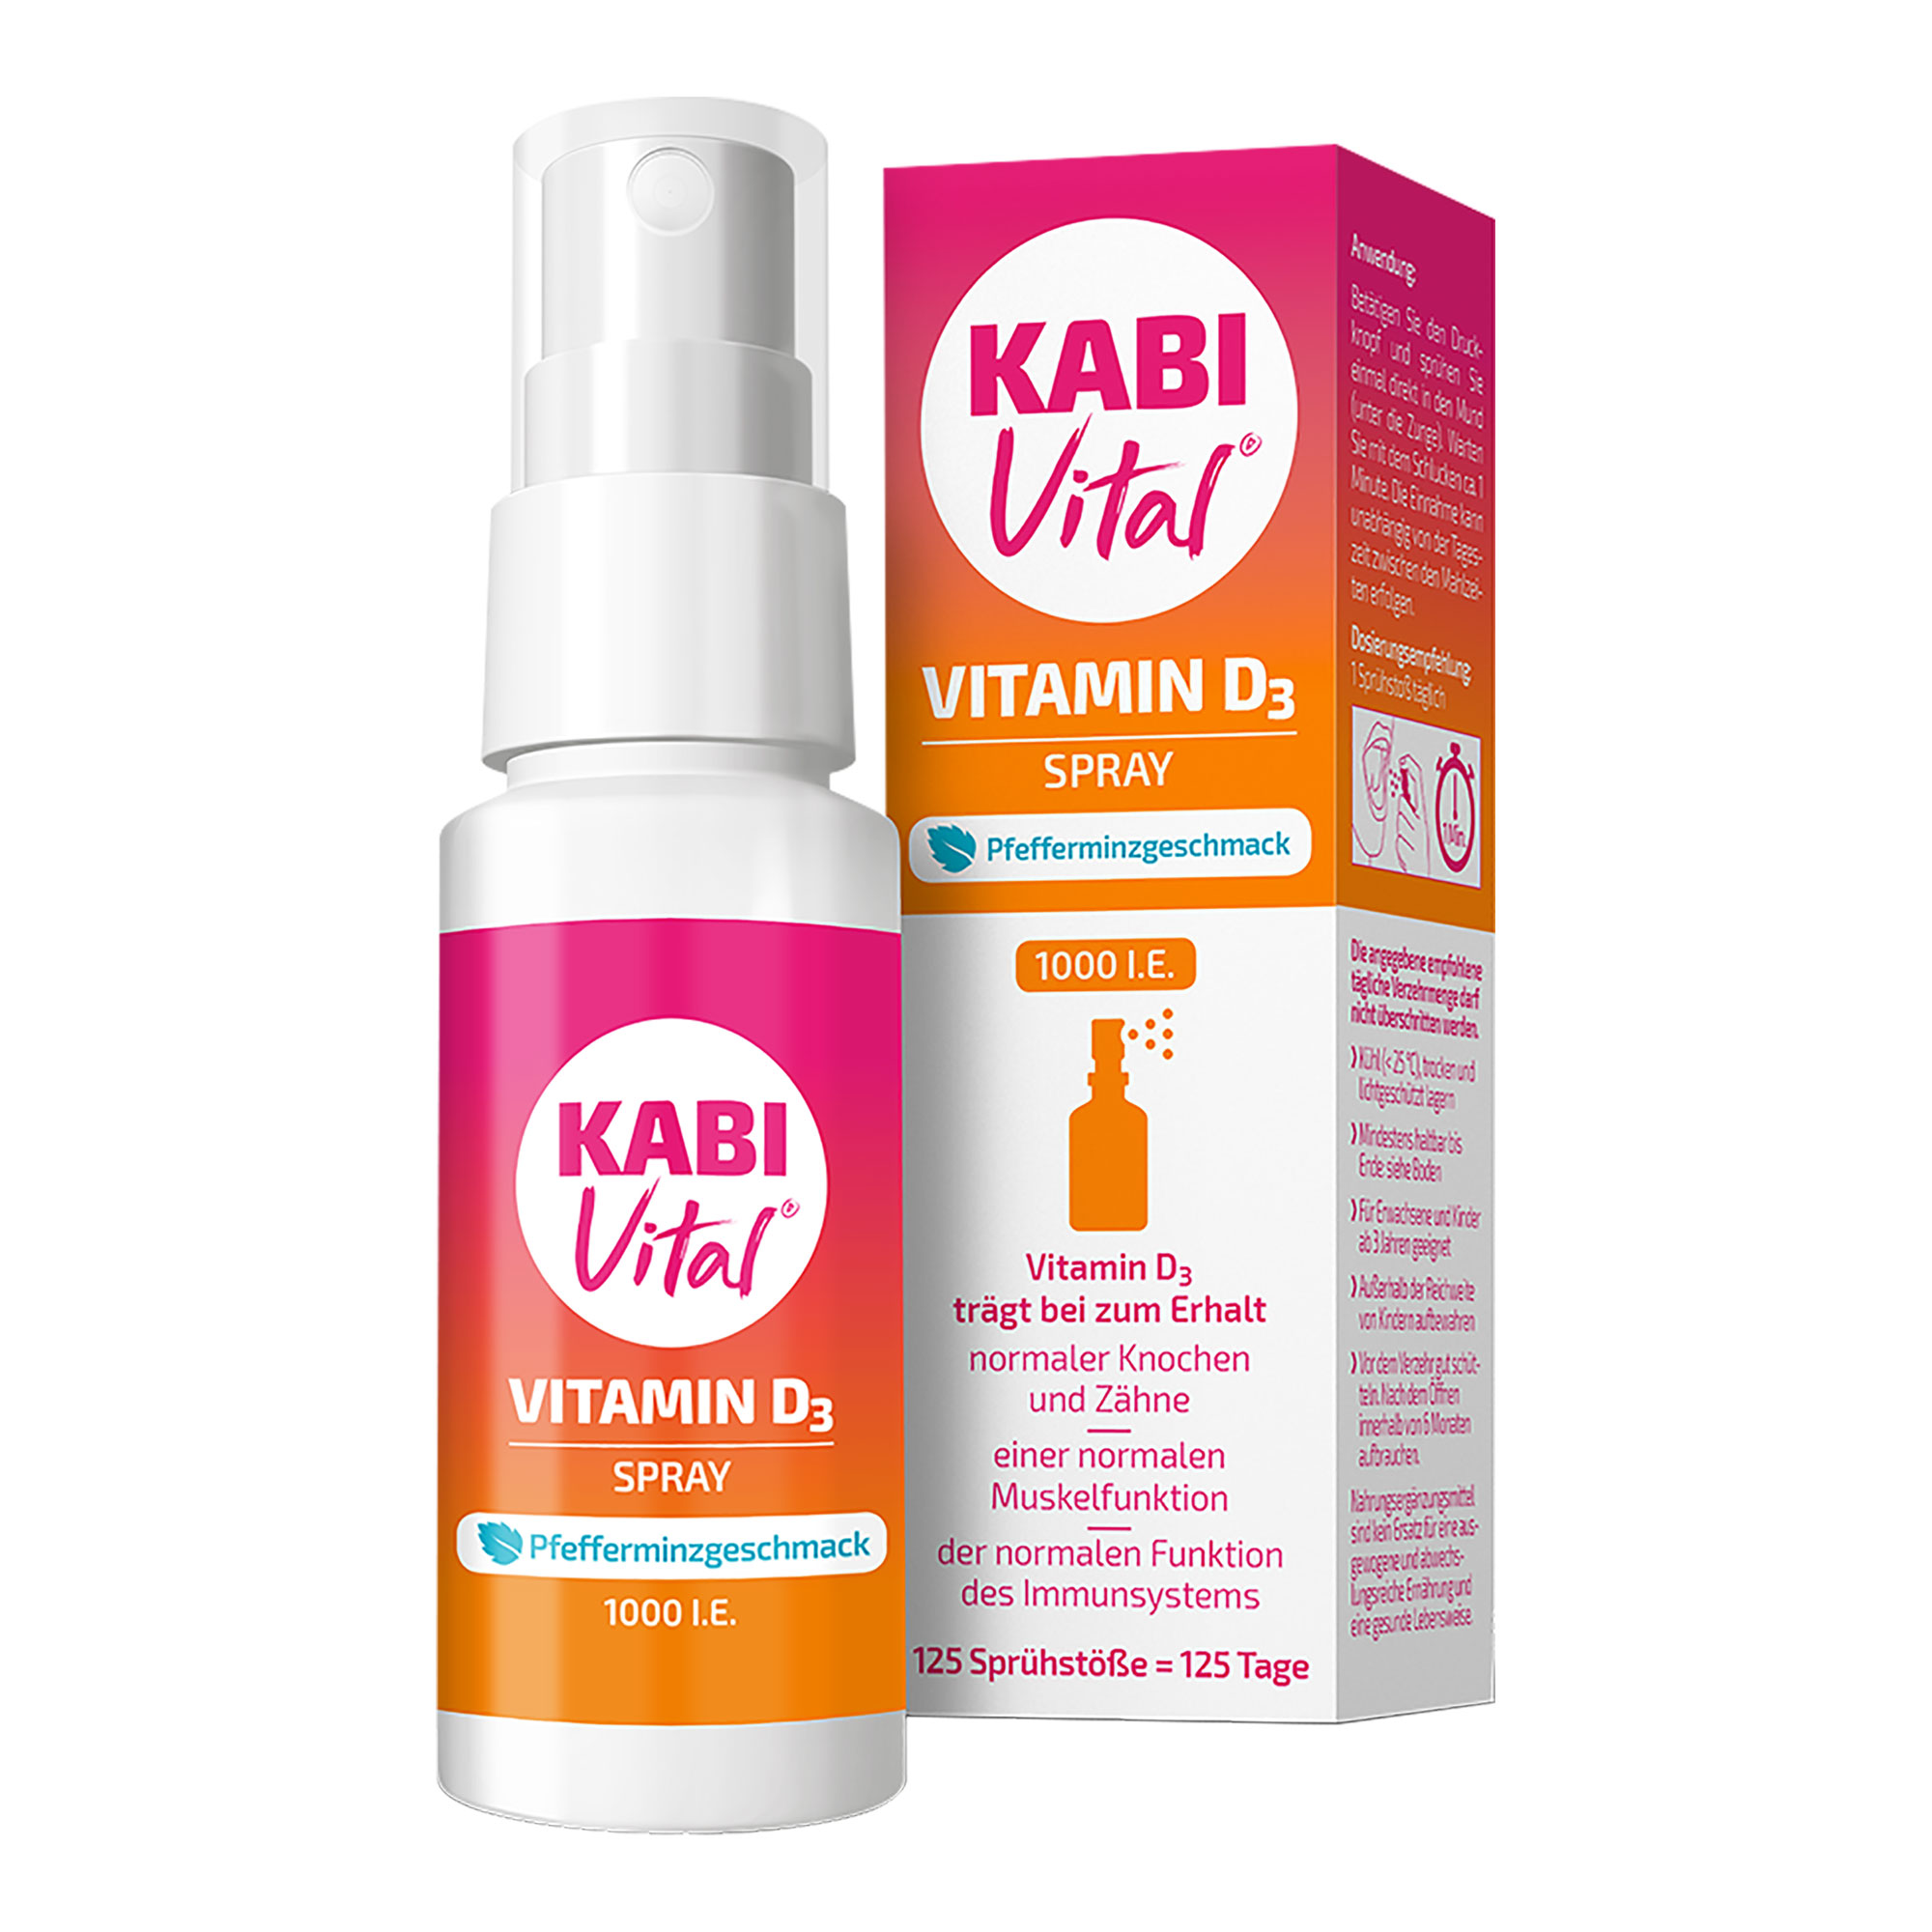 Vitamin D3 Spray mit Pfefferminzgeschmack für Erwachsene und Kinder ab 3 Jahren.